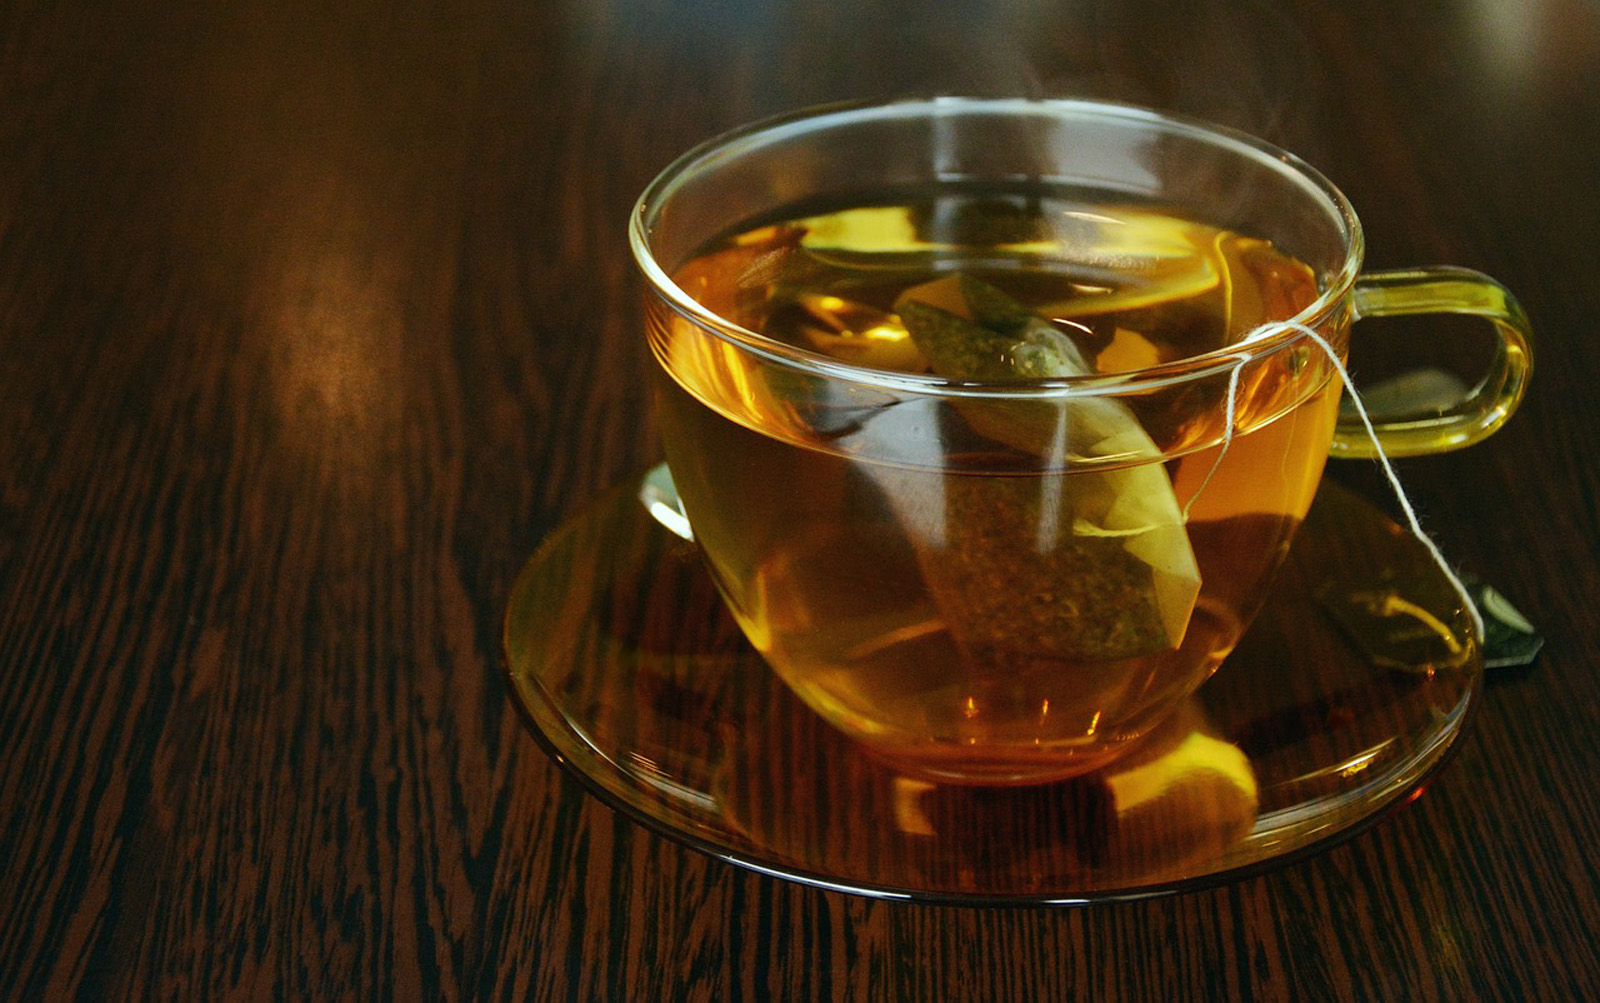 Des chercheurs de l’université McGill (Canada) ont analysé des eaux dans lesquelles des sachets de thé en plastique ont infusé. Elles grouillaient de particules de plastique. © congerdesign, Pixabay License